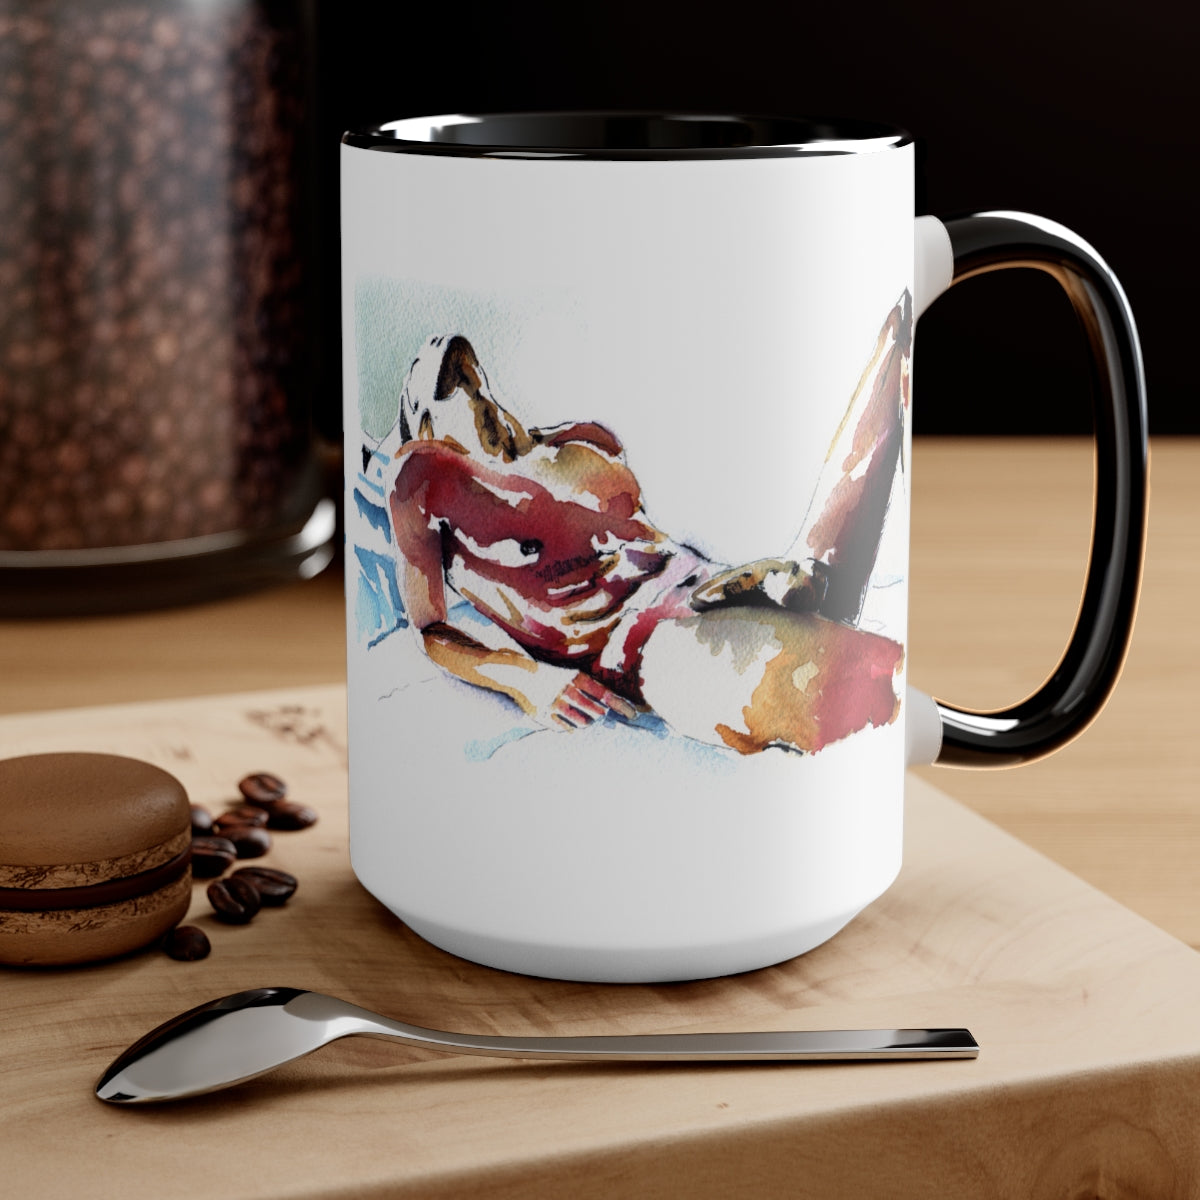 The Sleeping Male - Full Nude Cup of Joe  - Two-Tone Coffee Mugs, 15oz